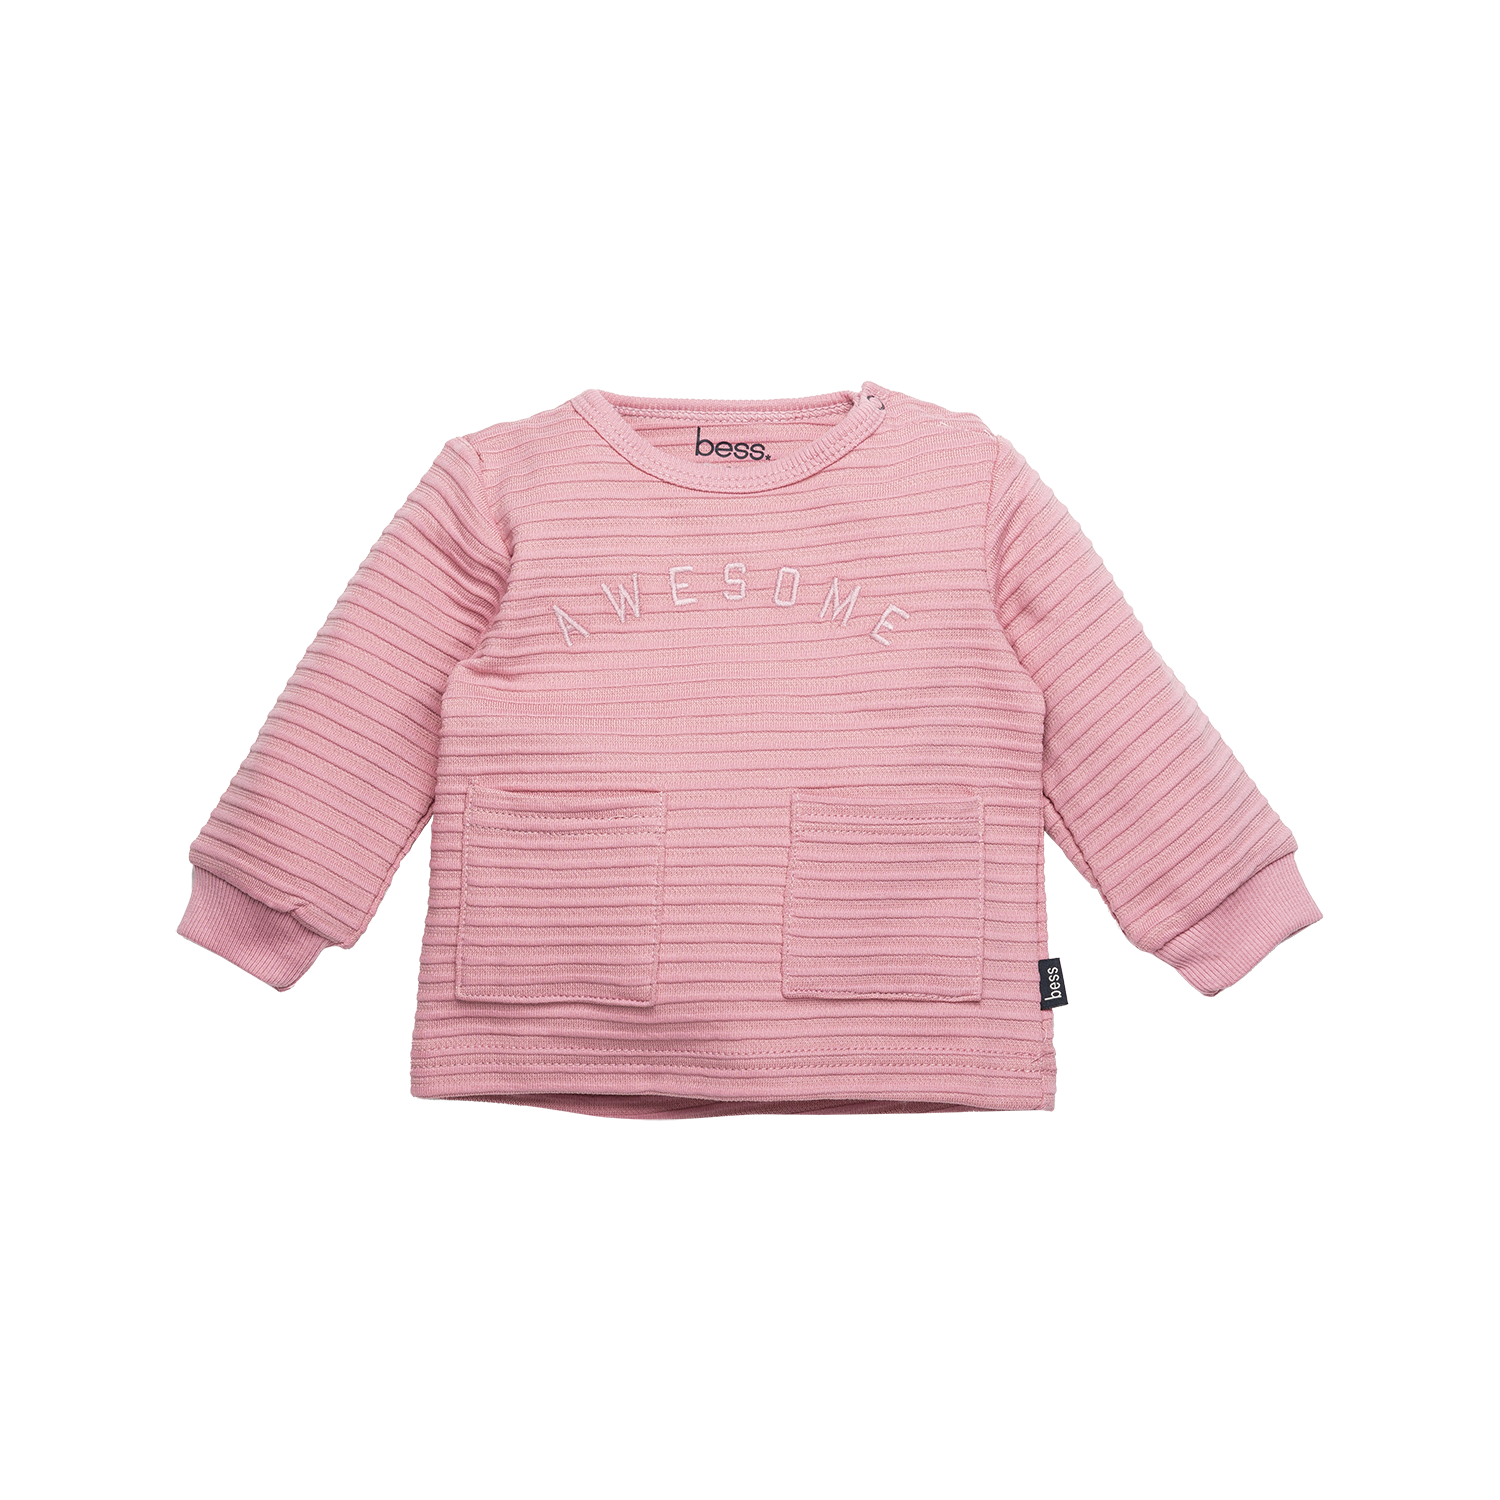 Meisjes Shirt l.sl. Rib Awesome van B.E.S.S. in de kleur Pink in maat 68.